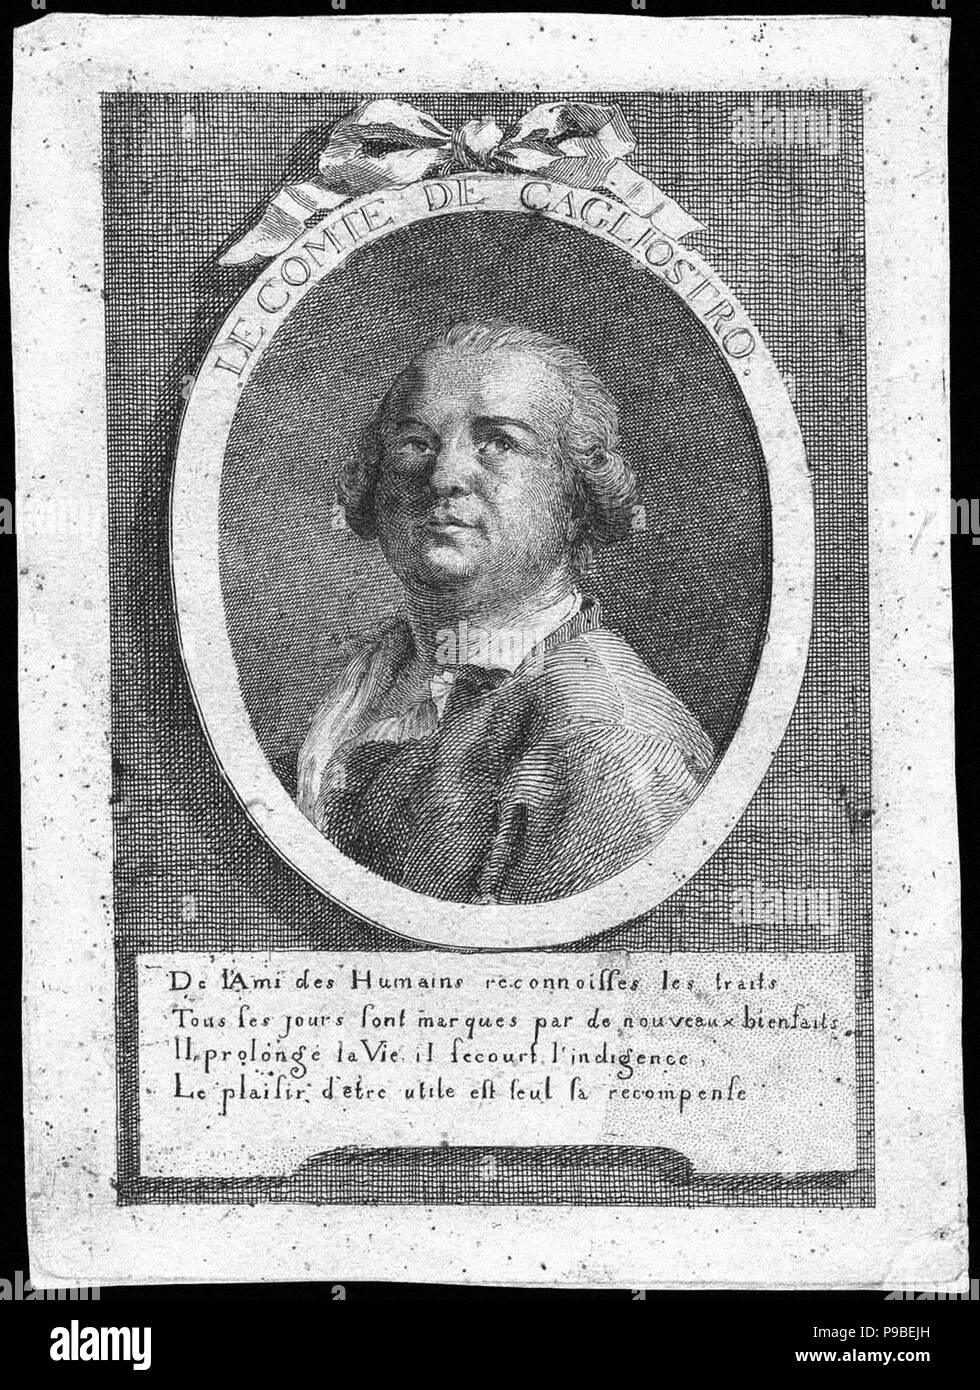 Count Alessandro di Cagliostro (1743-1795). Museum: PRIVATE COLLECTION. Stock Photo